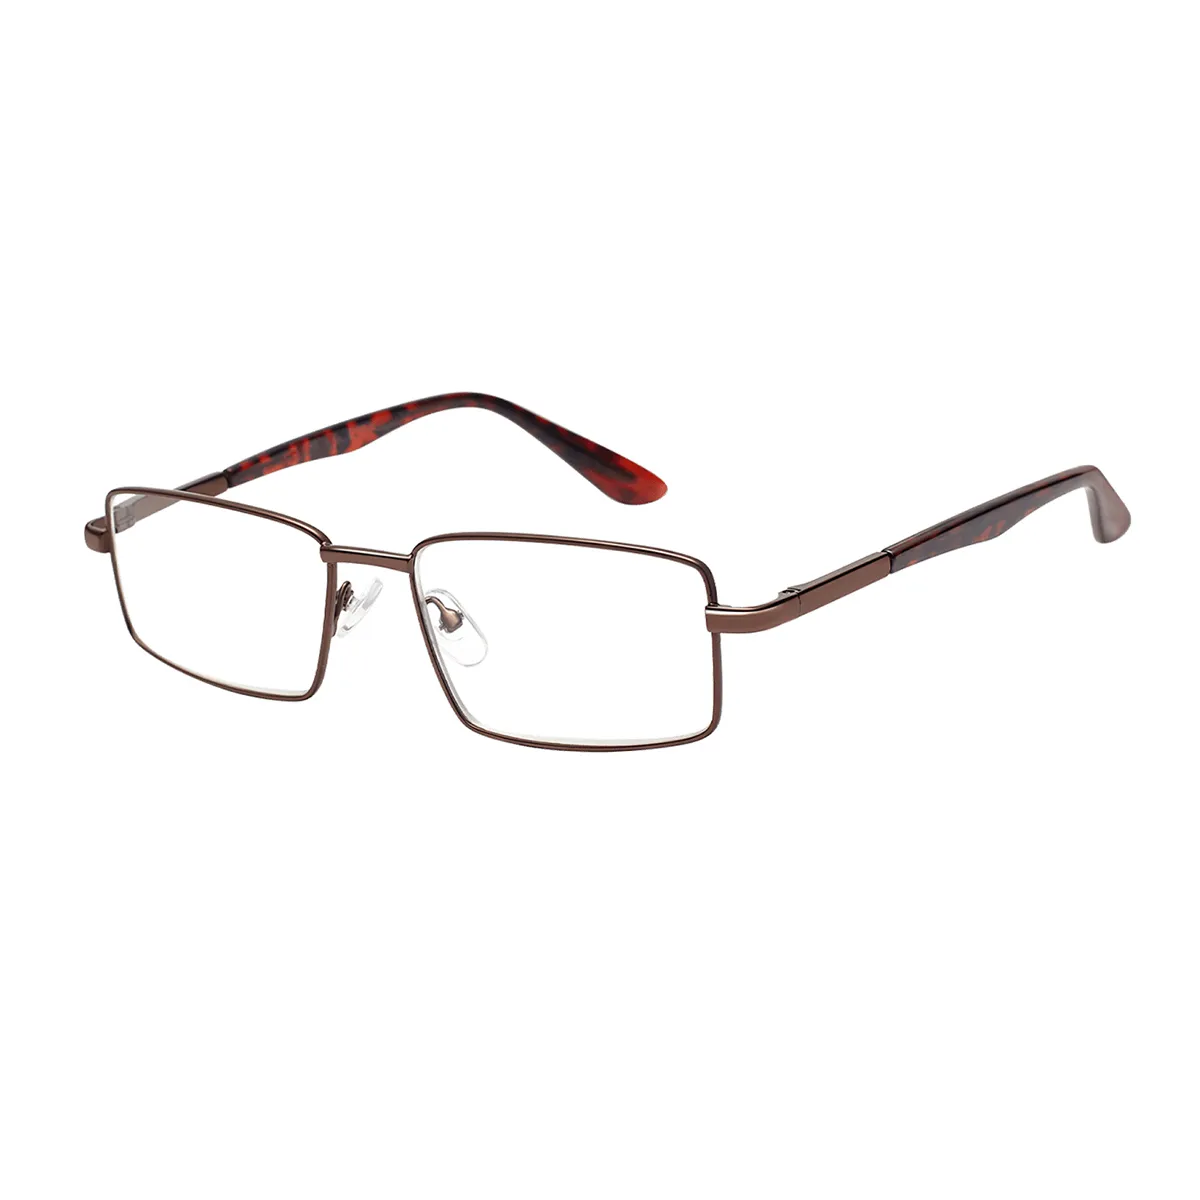 Classic Rectangle Brown-Tortoiseshell Glasses for Men